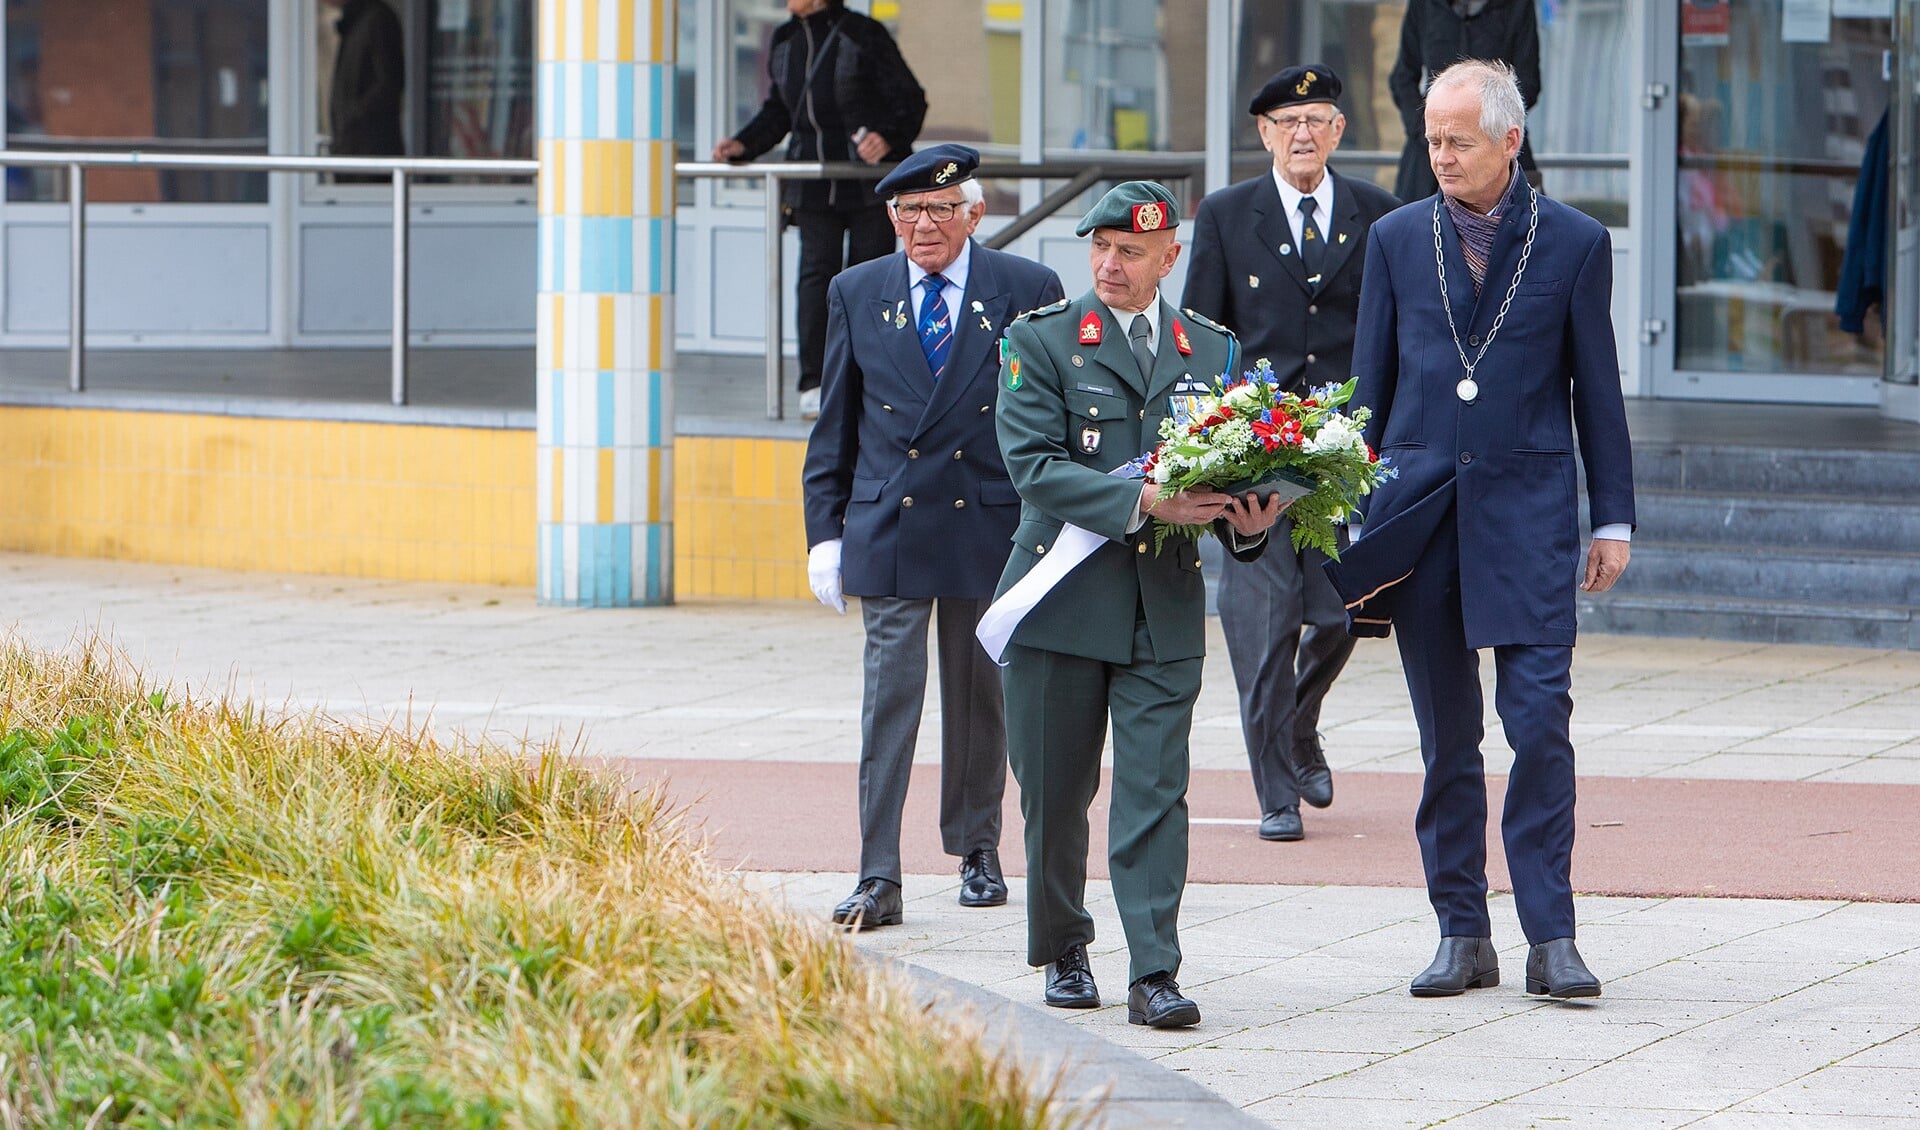 Veteranen leggen samen met de burgemeester bloemen neer bij het monument.